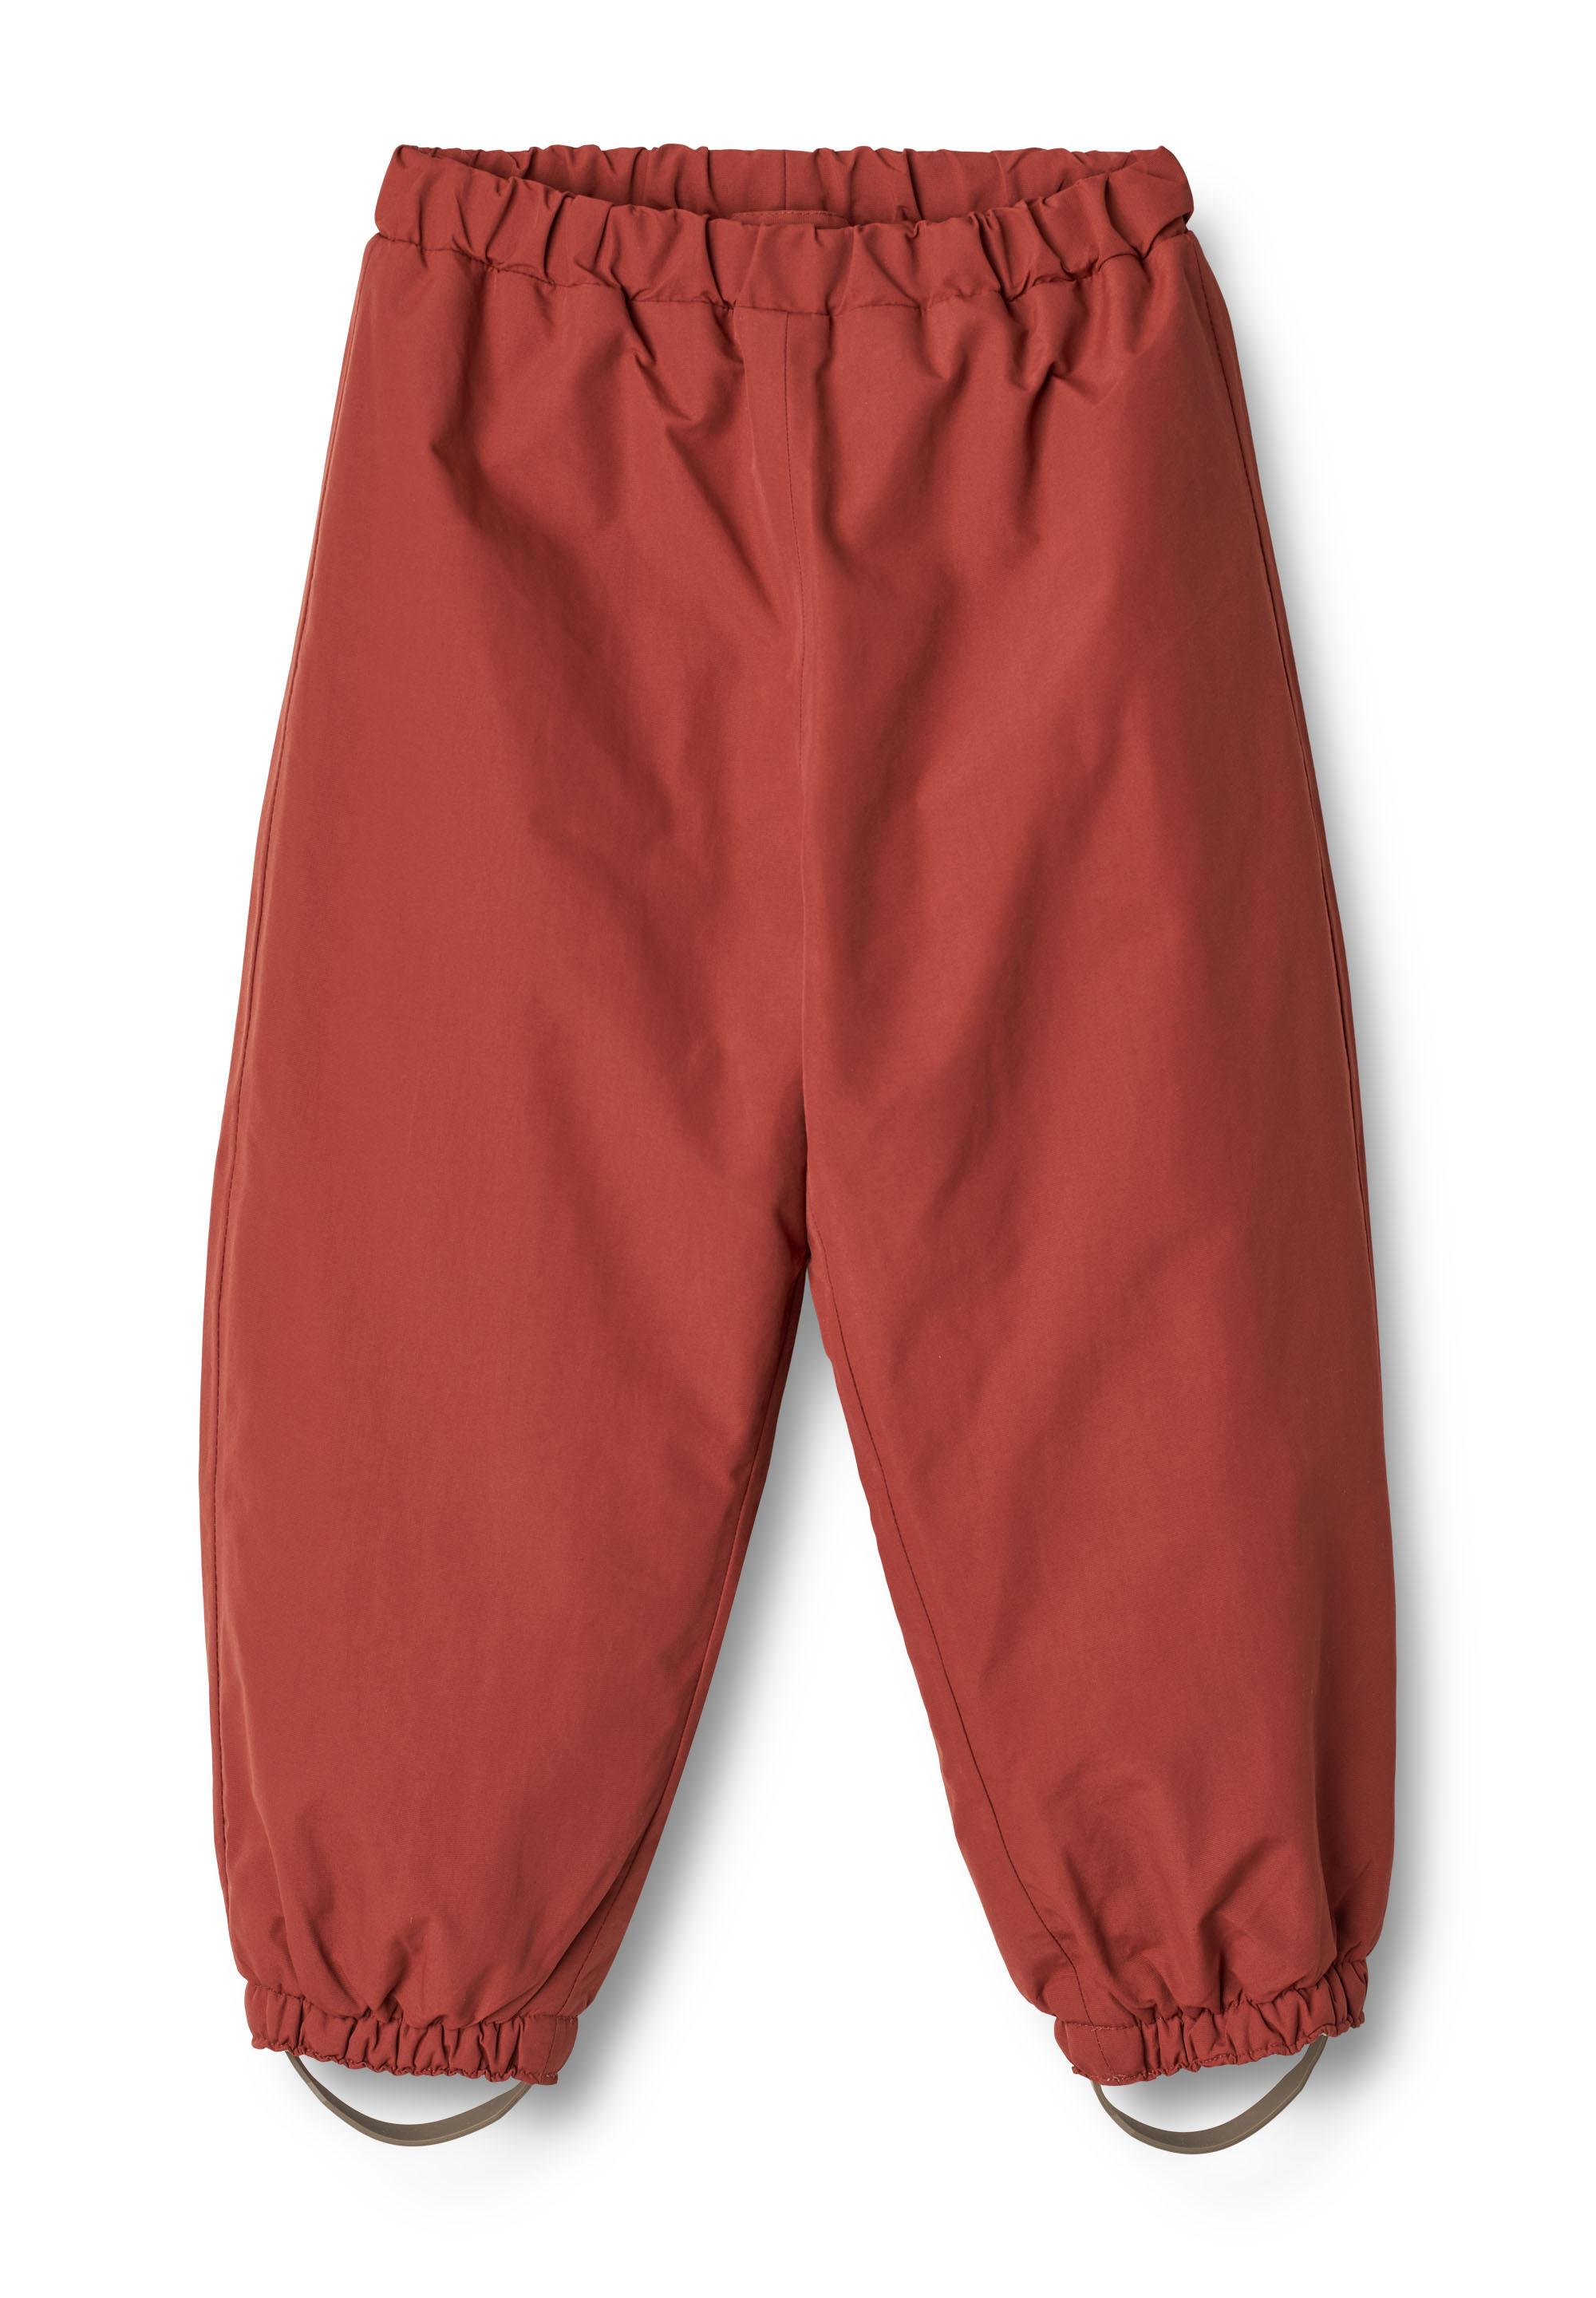 Лыжные штаны Wheat Skihose Jay Tech, красный